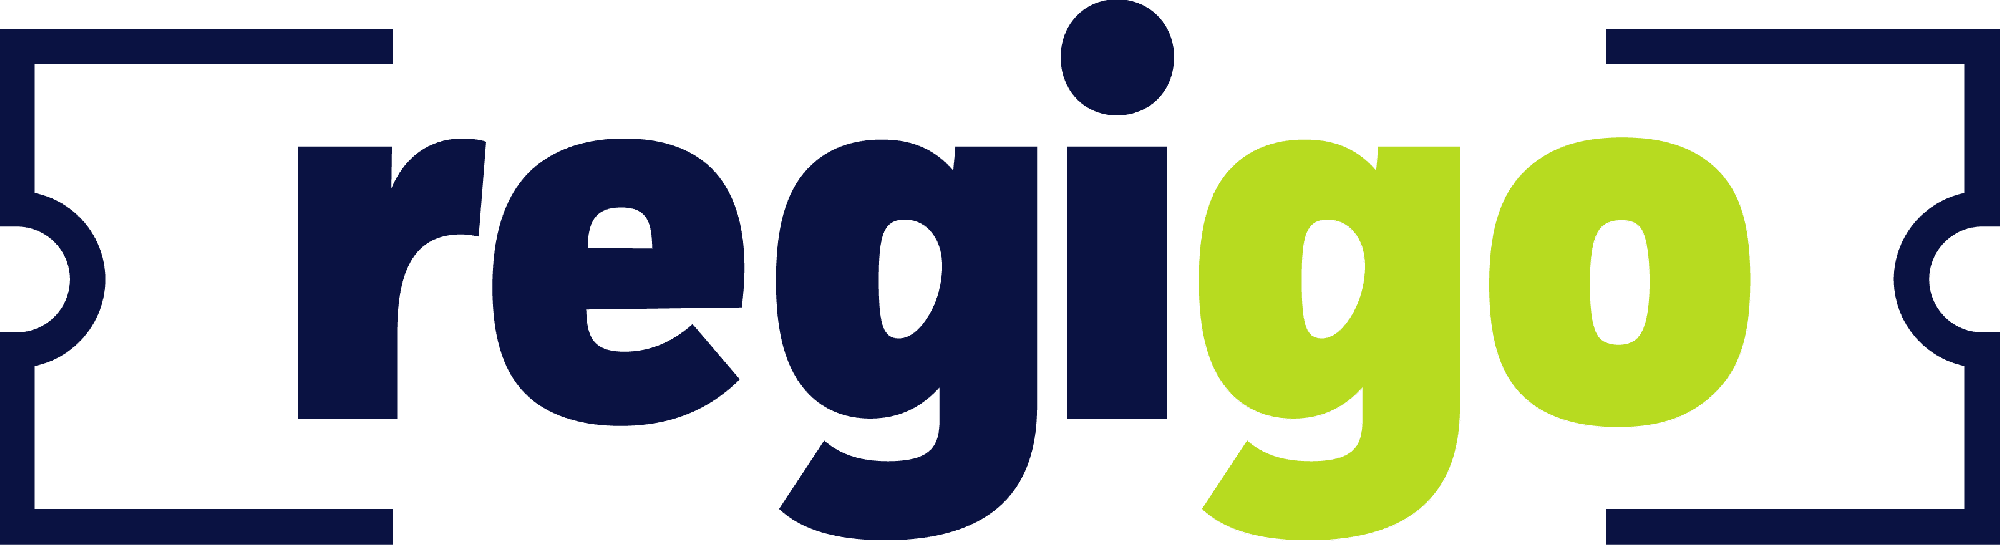 BG_Regigo_Logo-1